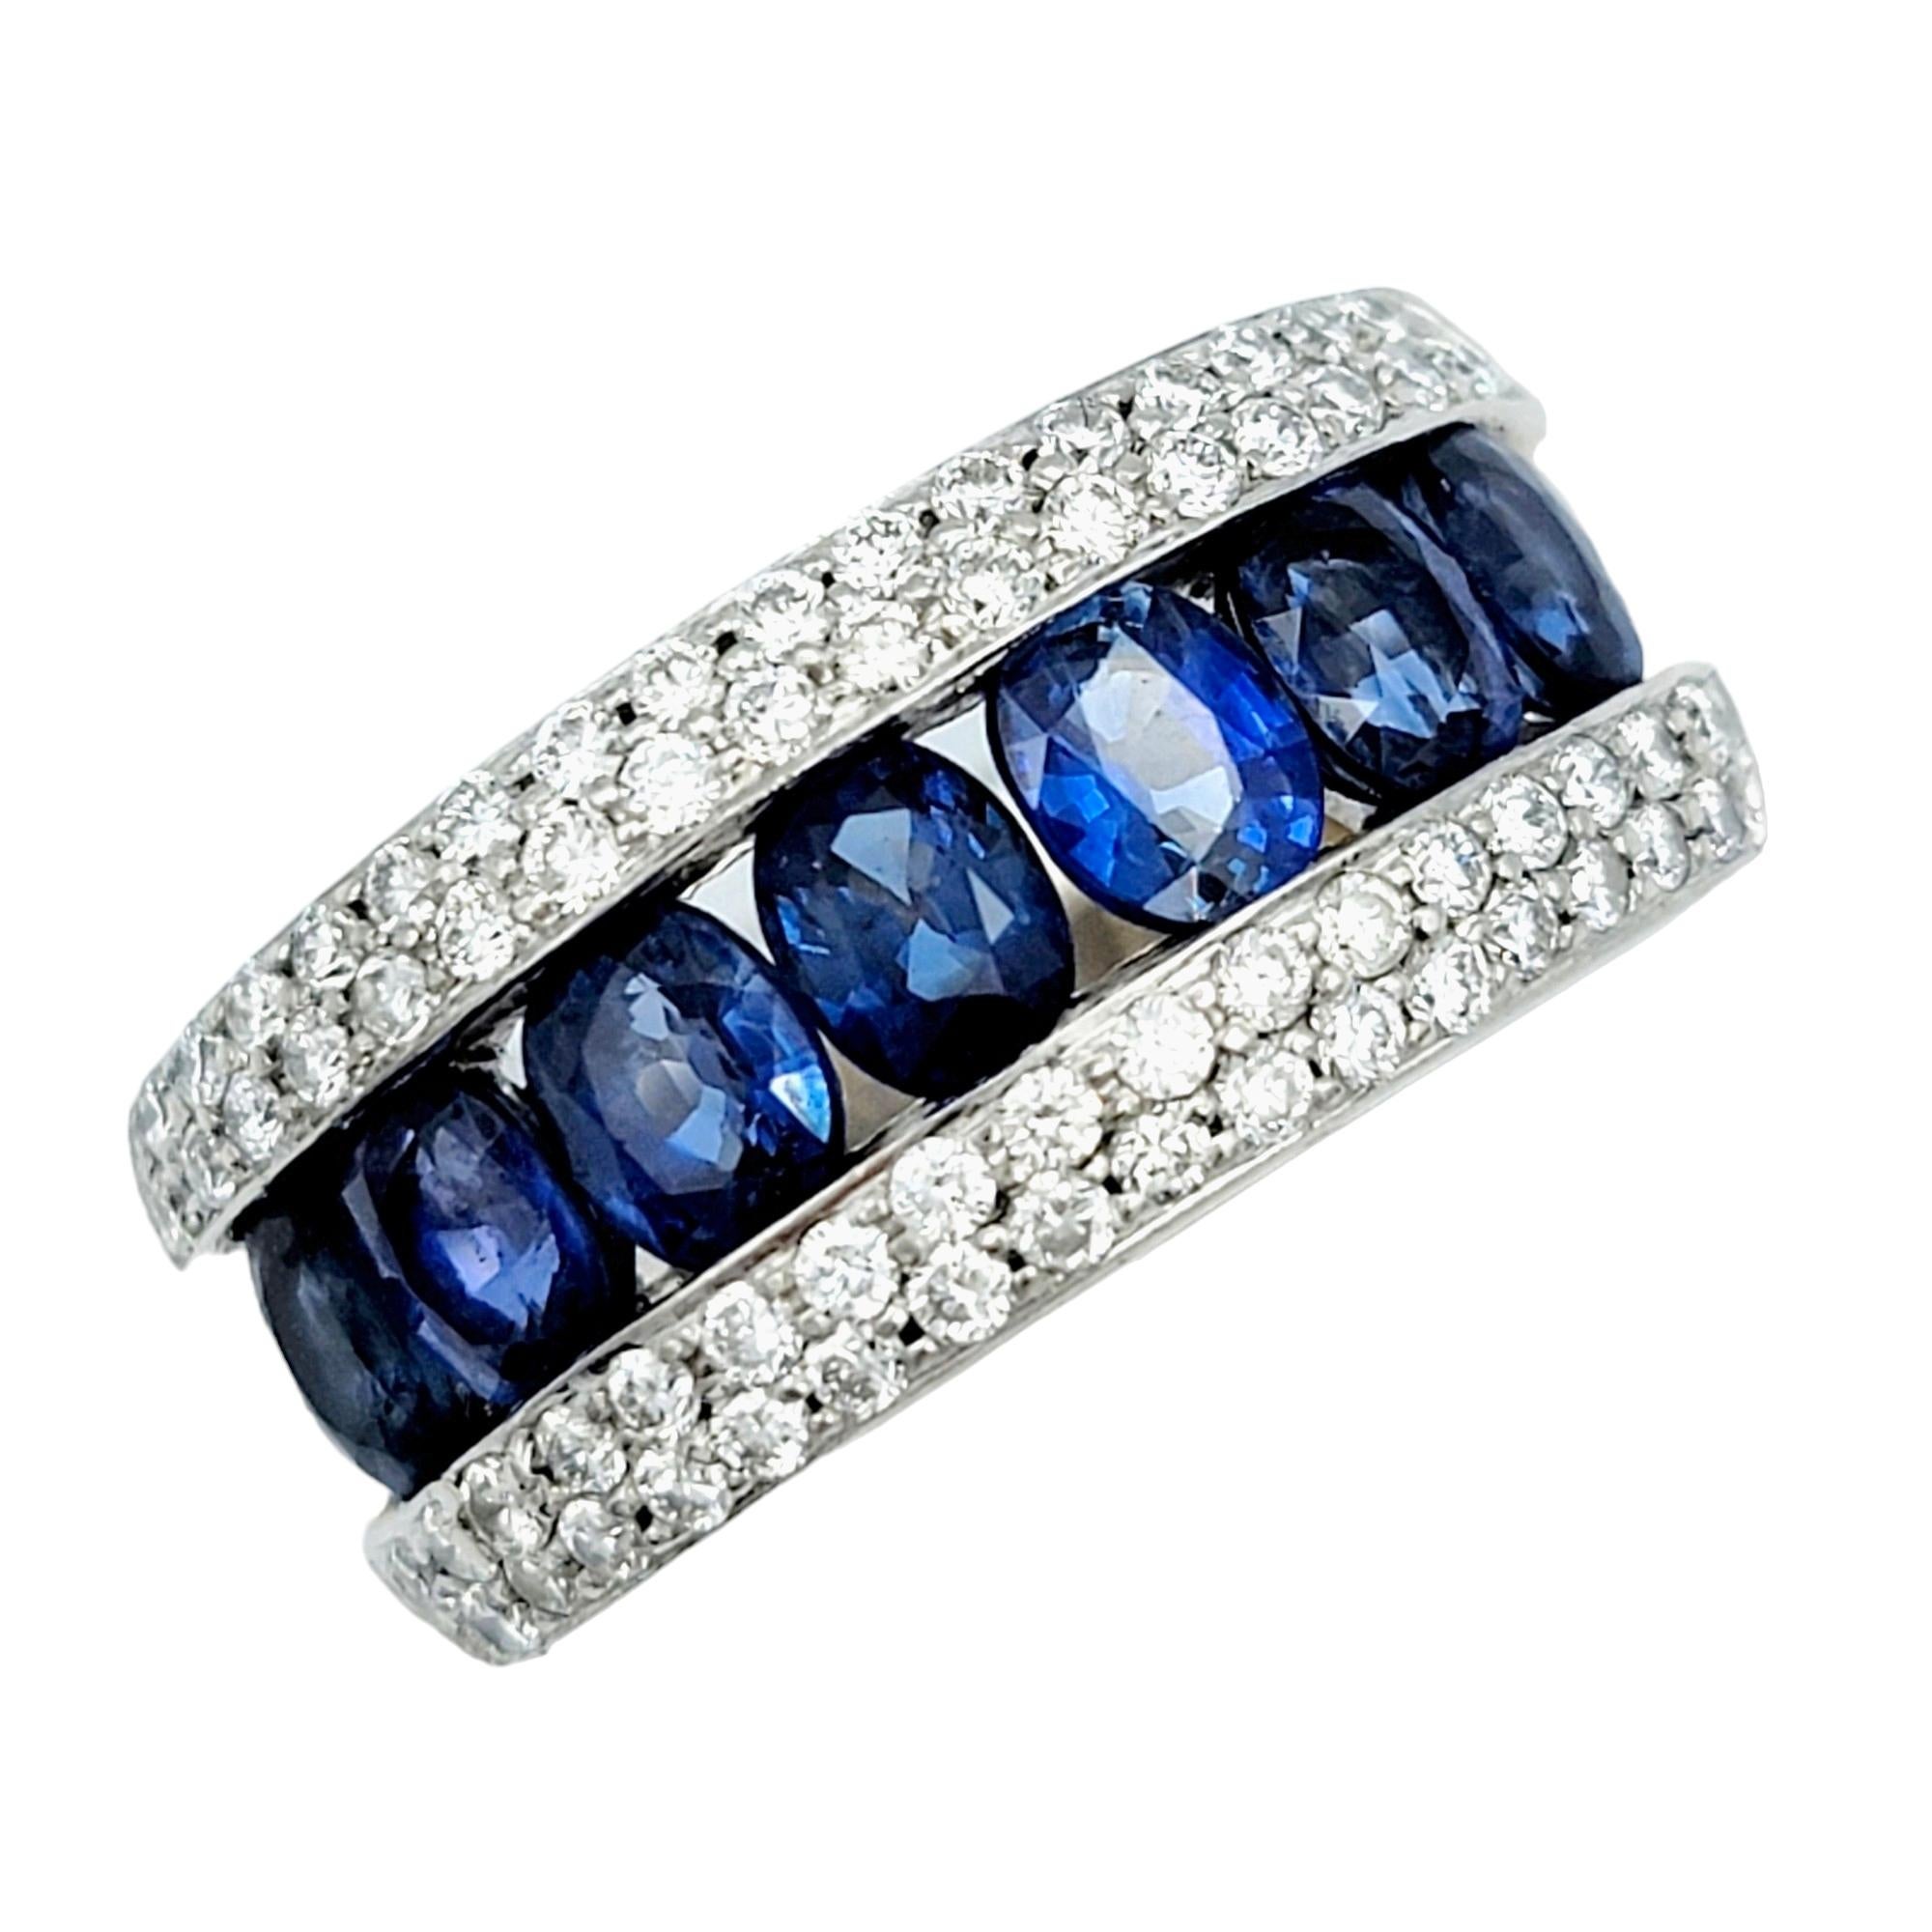 Taille de l'anneau : 6.25

Cet anneau captivant est une œuvre d'art sophistiquée et éblouissante. Fabriquée avec précision, la bague présente une série de saphirs bleus ovales exquis sertis en canal entre de délicats diamants pavés, créant ainsi un